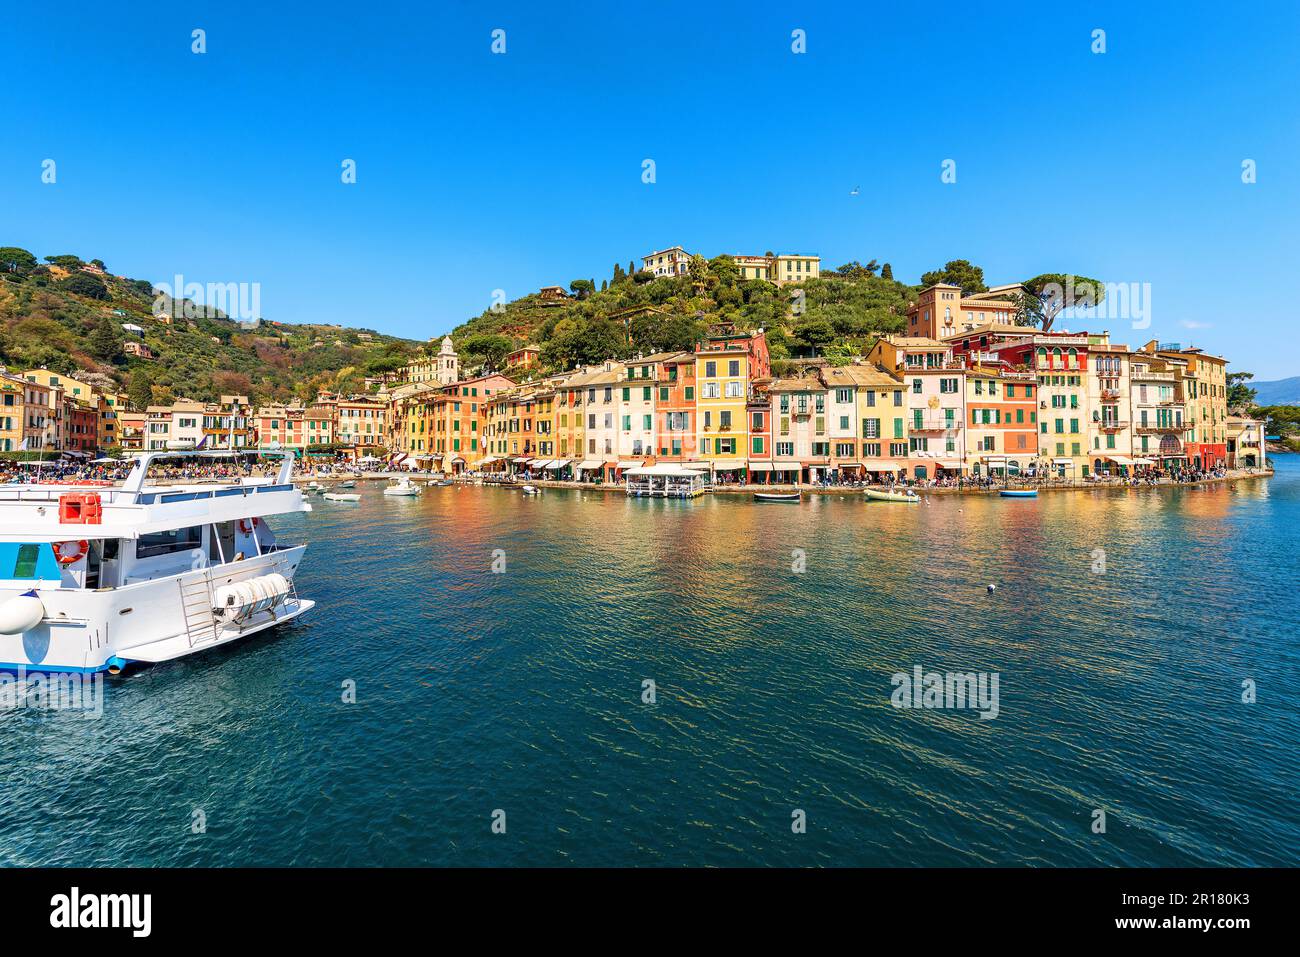 Villaggio di Portofino, località turistica di lusso in provincia di Genova, Liguria, Italia, Europa. Porto e case colorate, Mar Mediterraneo (Mar Ligure). Foto Stock